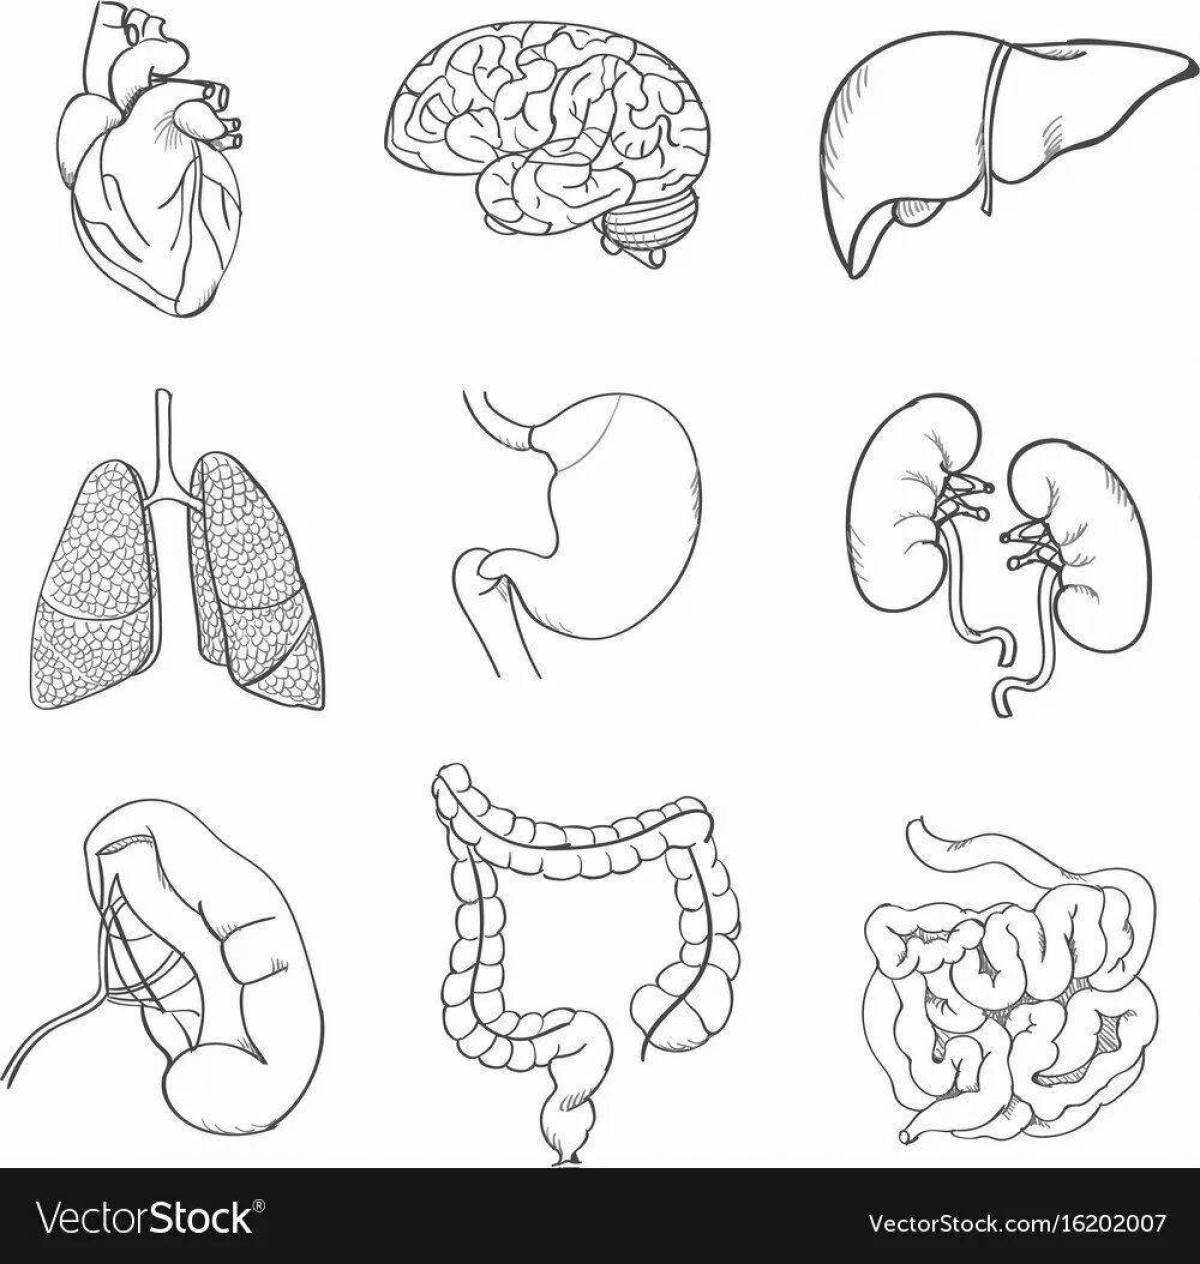 Human structure internal organs #5